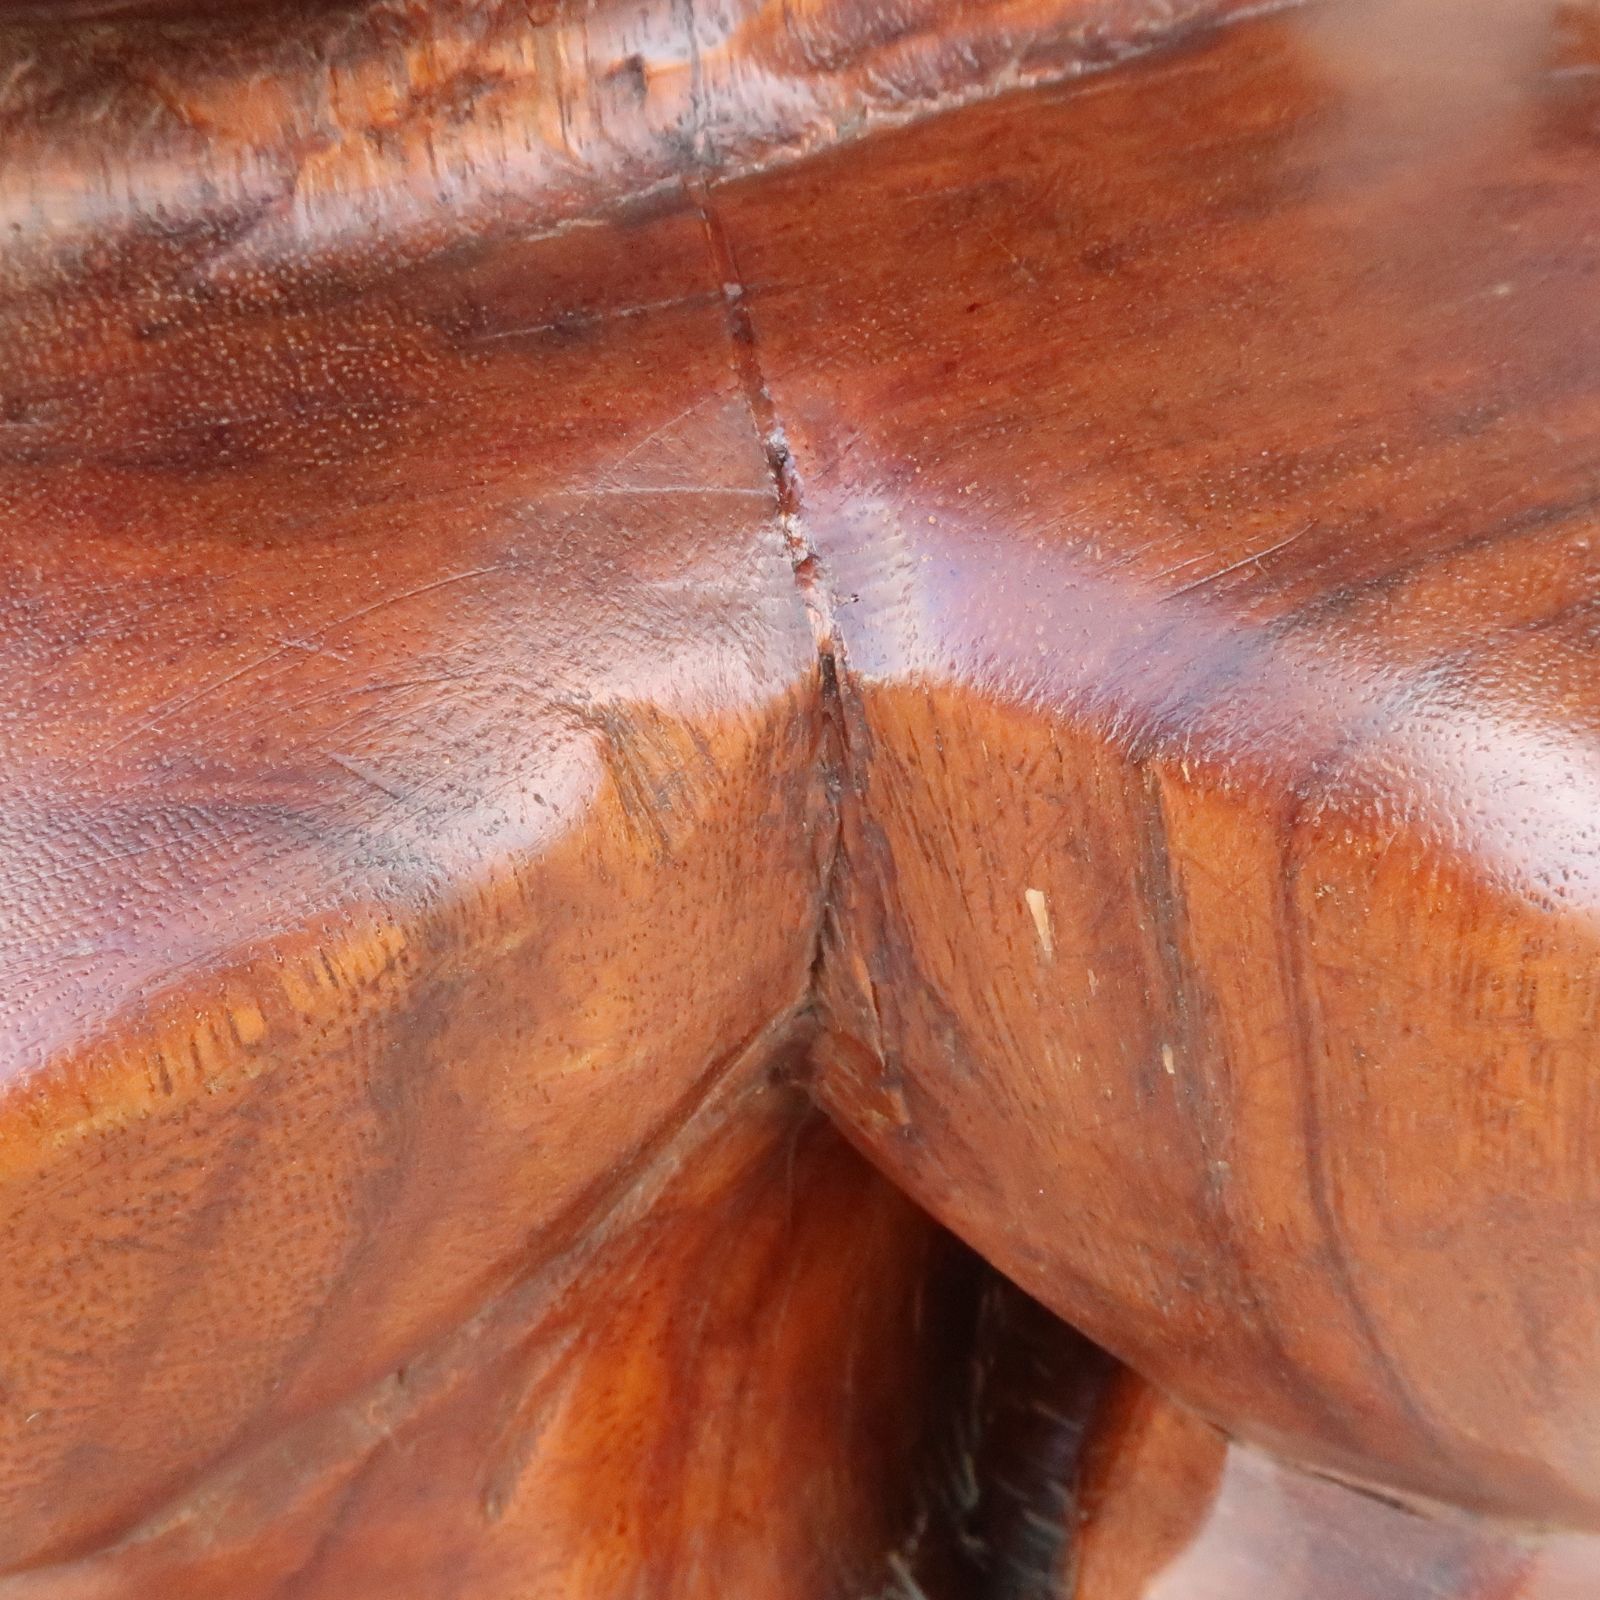 ティキの木彫り カナロア TIKI KANALOA100cm 木製スワール無垢材 1m